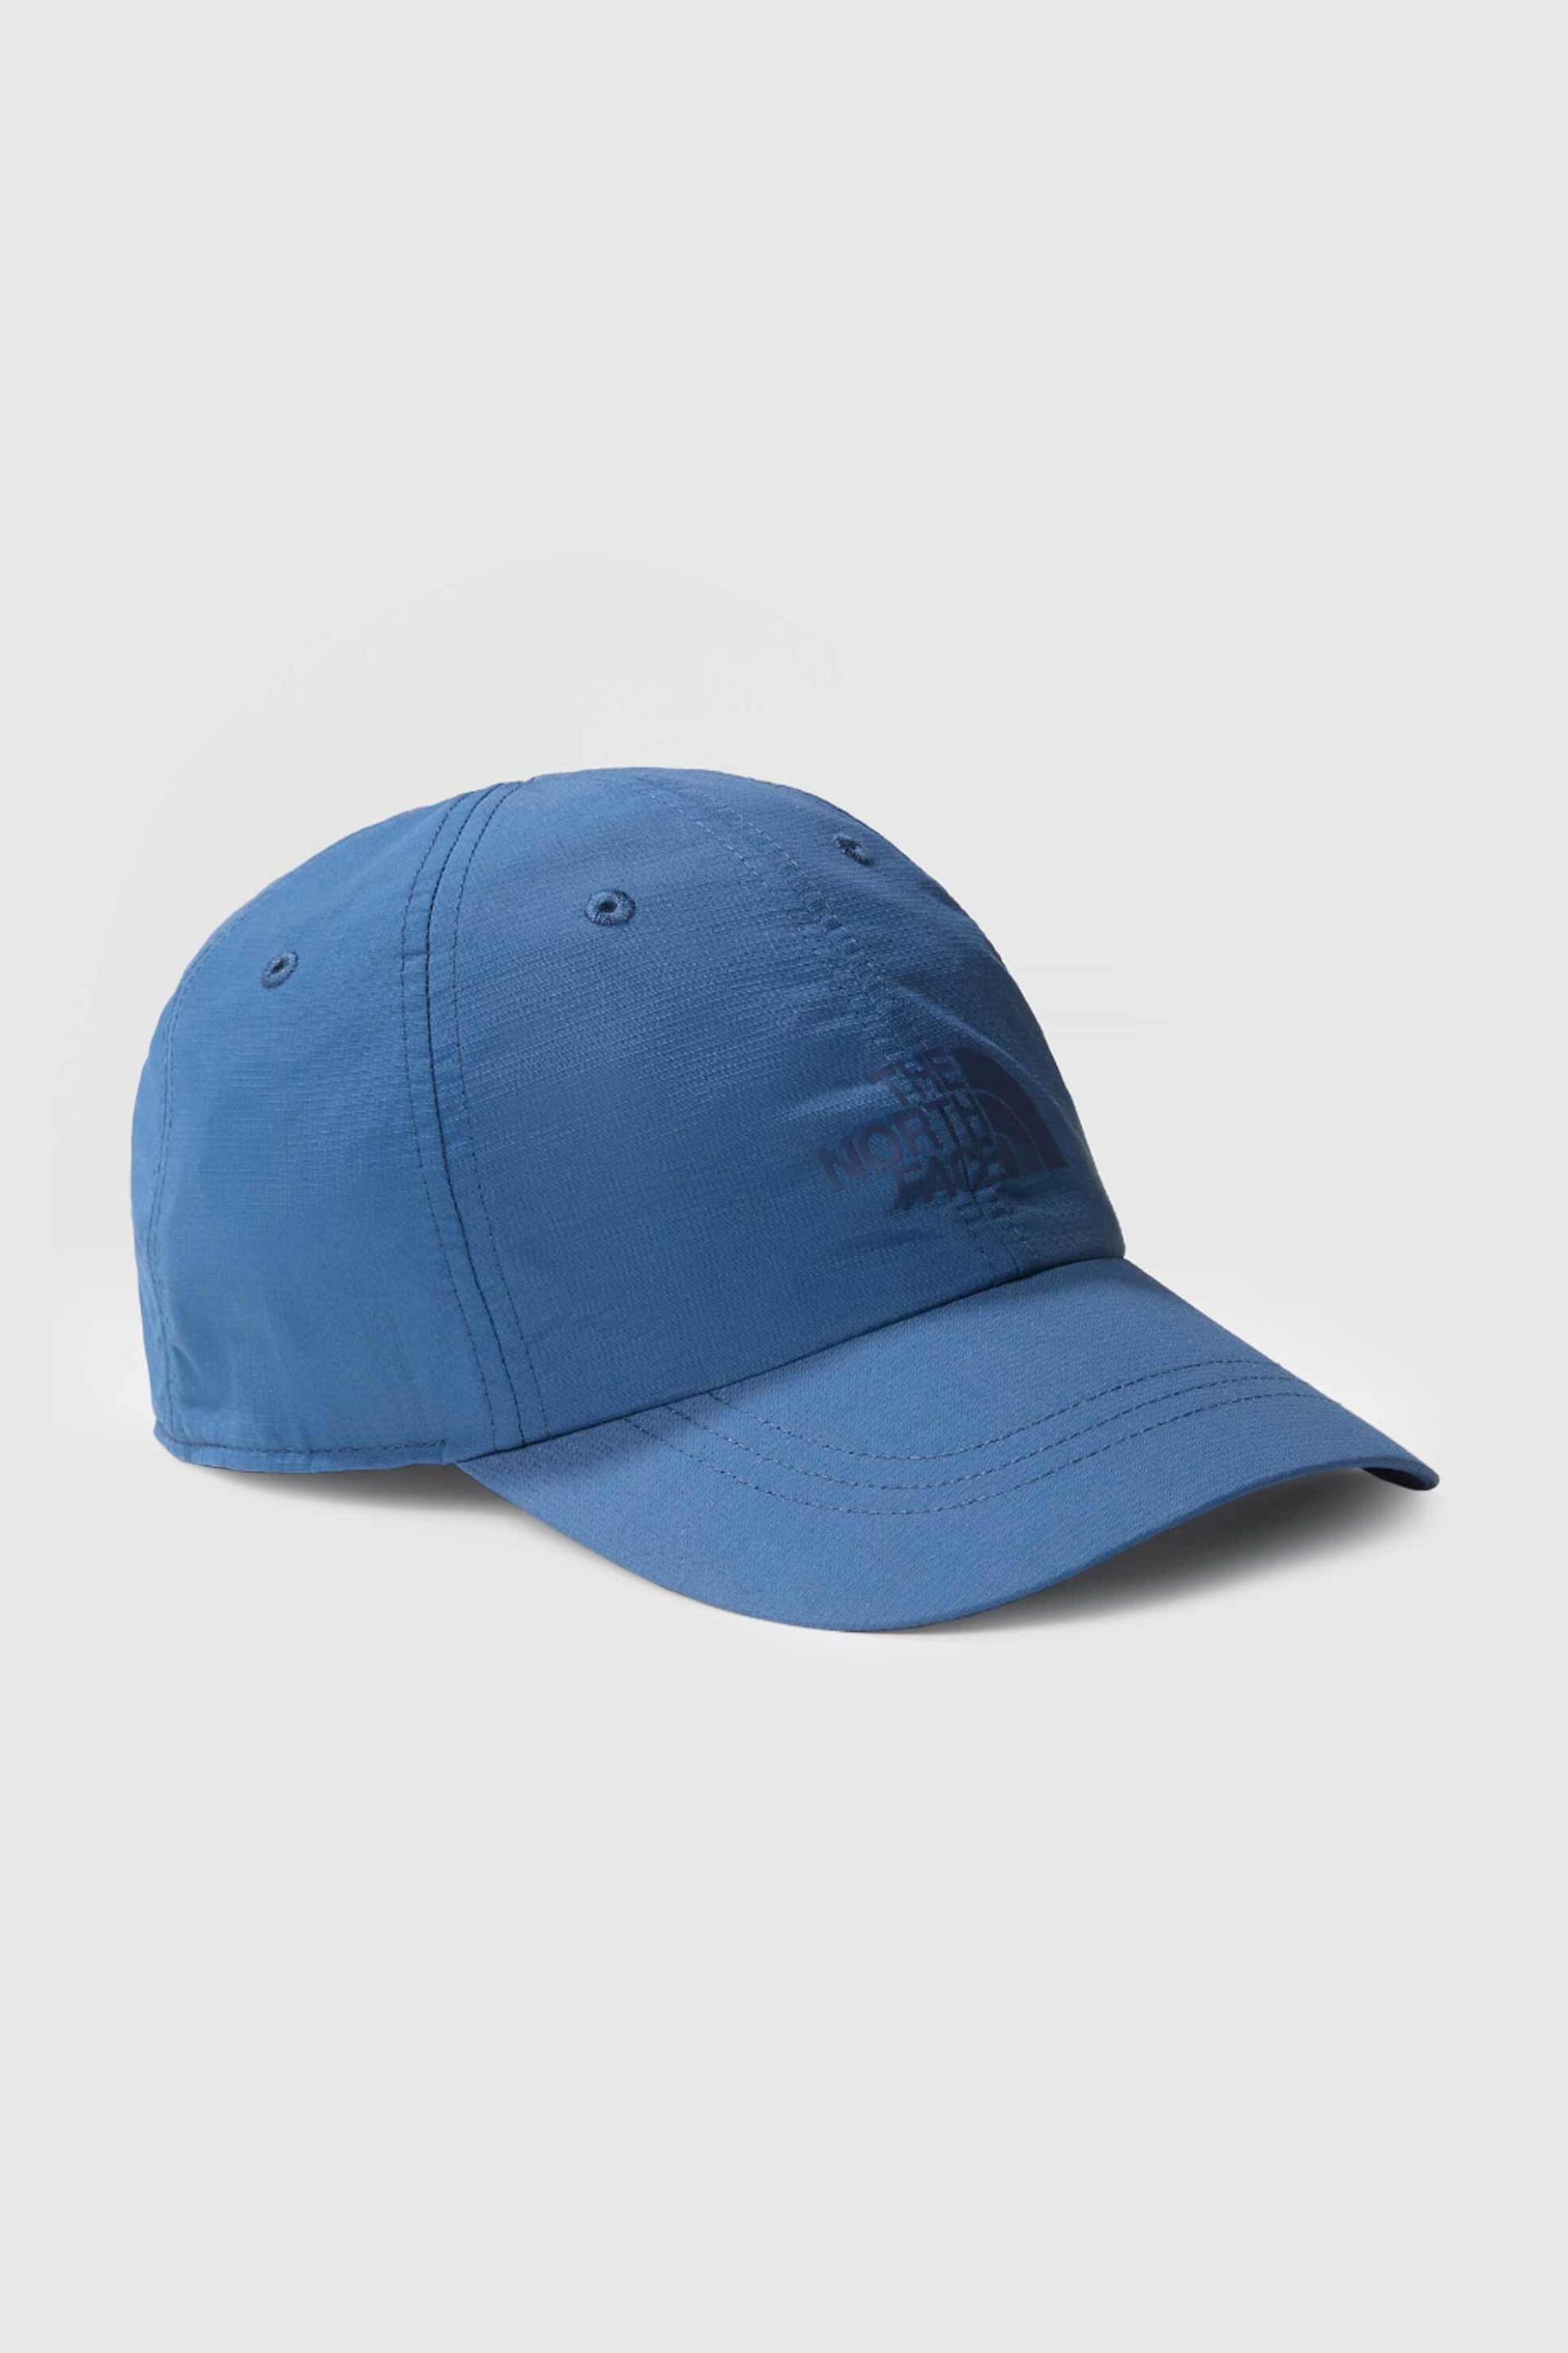 Ανδρική Μόδα > Ανδρικά Αξεσουάρ > Ανδρικά Καπέλα & Σκούφοι The North Face unisex καπέλο μονόχρωμο με logo print και ρυθμιζόμενο λουράκι "Horizon Cap - NF0A5FXLHDC1 Μπλε Σκούρο